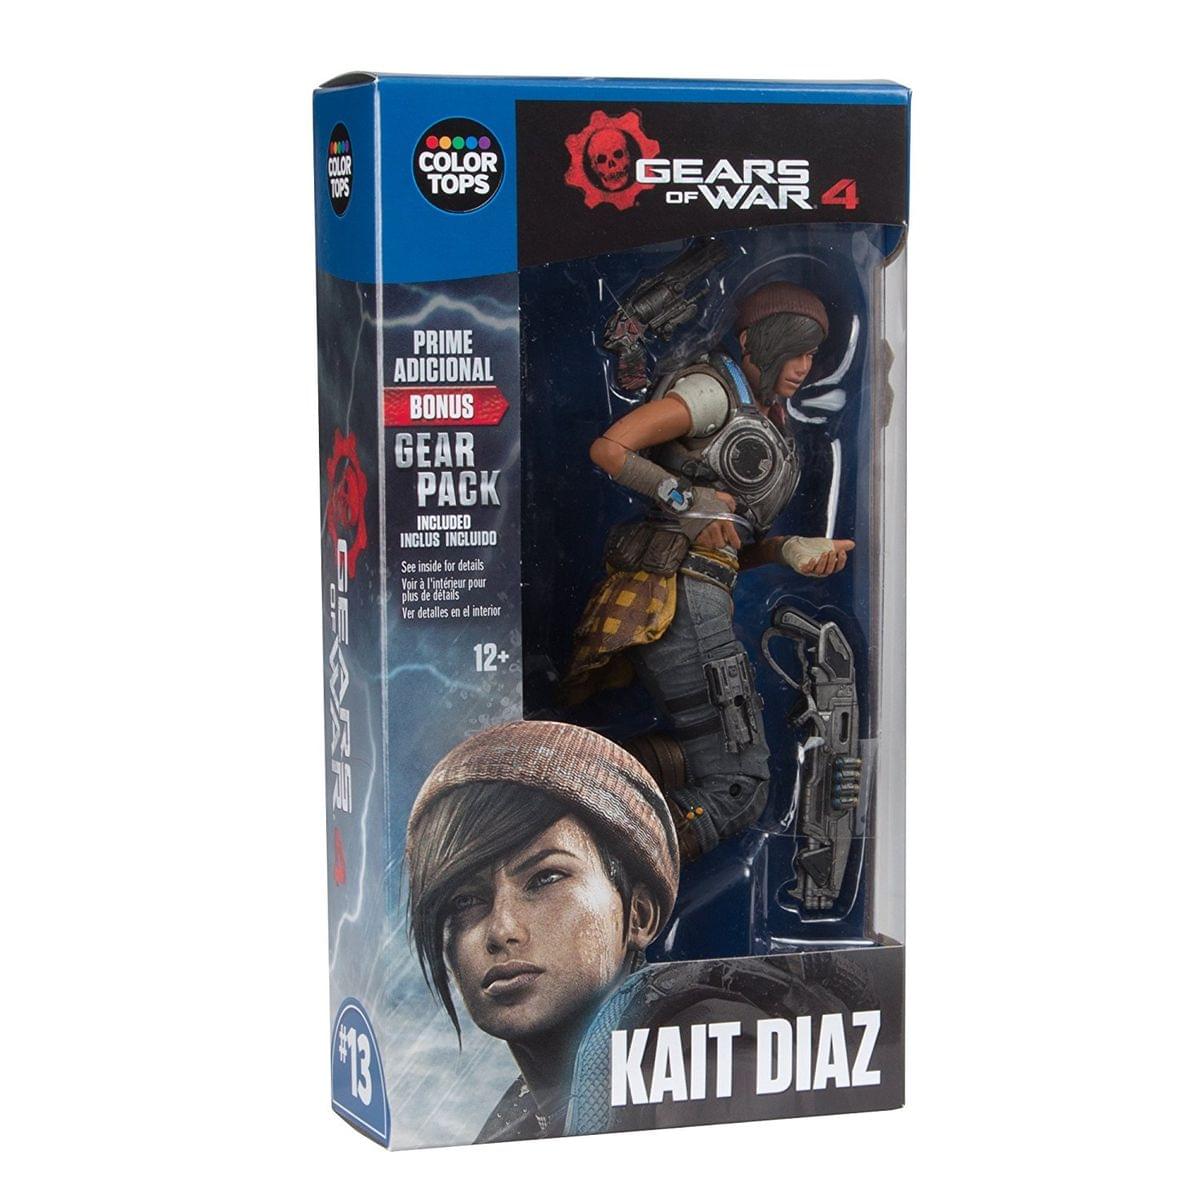 Gears of War 4 7" Color Tops Action Figure: Kait Diaz